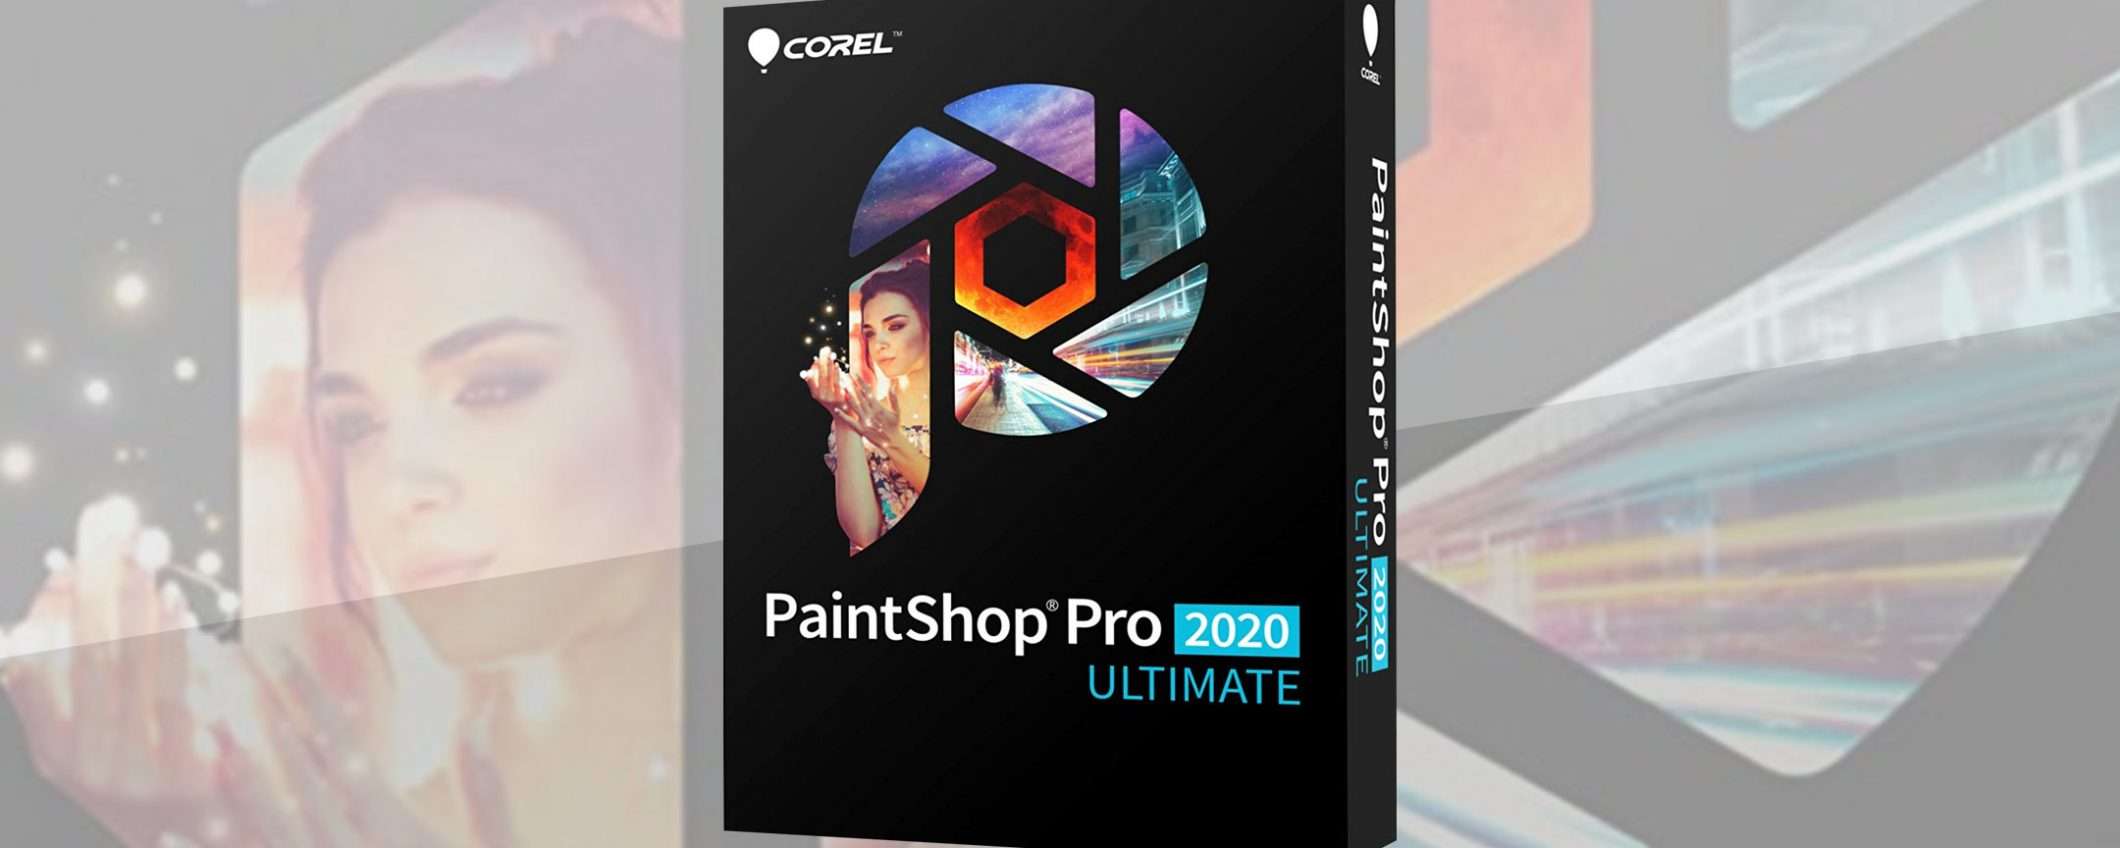 Offerte Amazon: PaintShop Pro 2020 a 69,99 euro